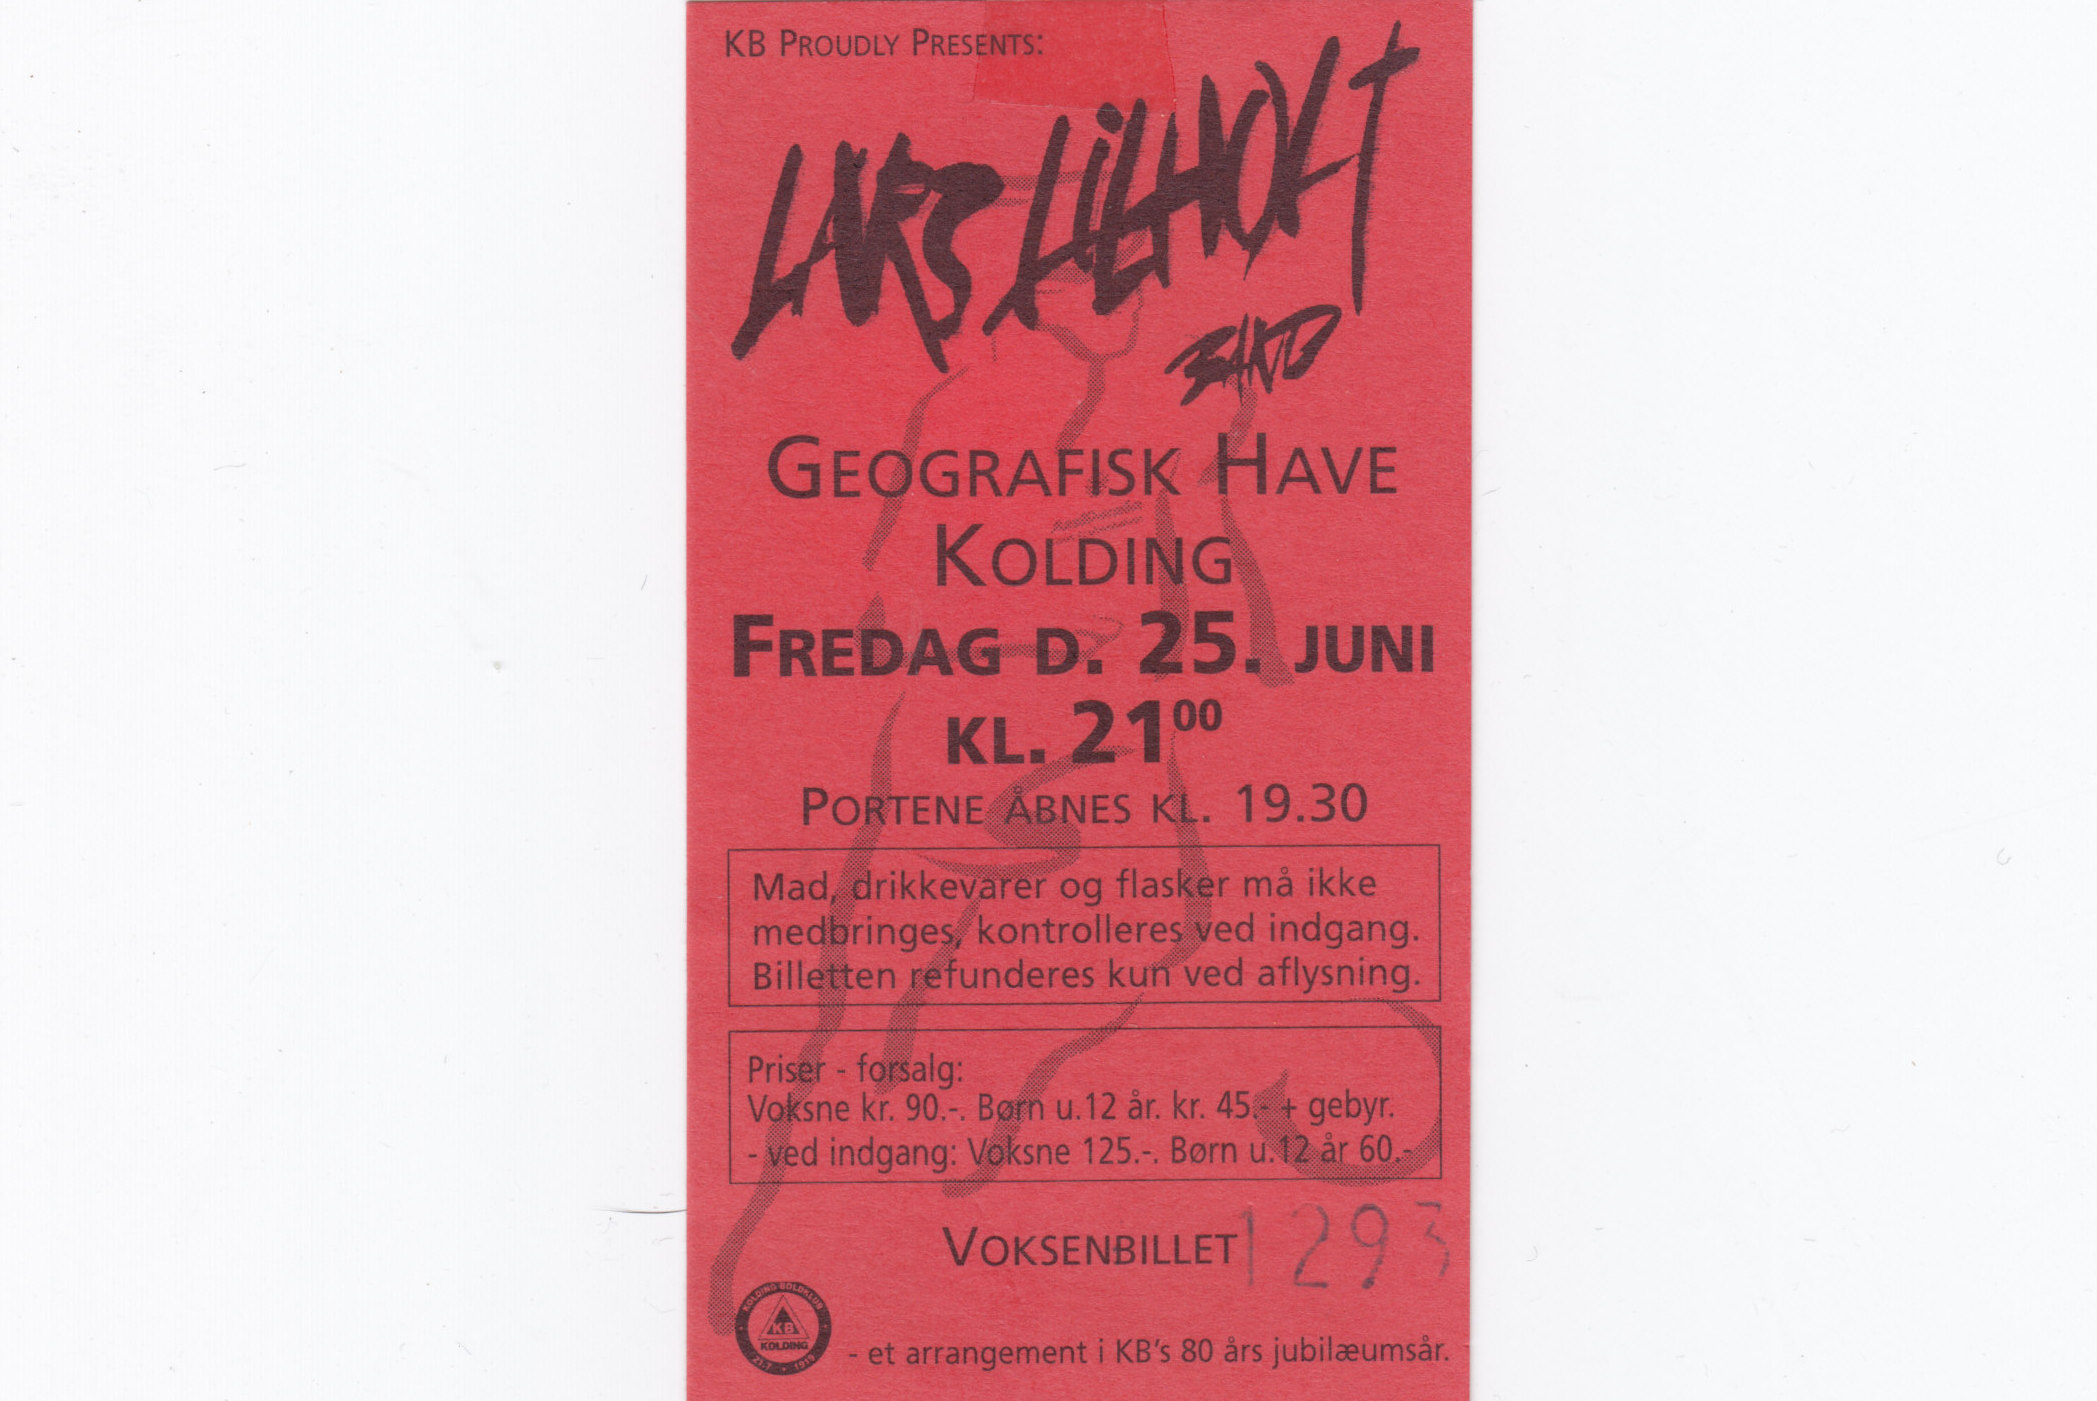 25. juni 1999 Koncert Lars Lilholt Band